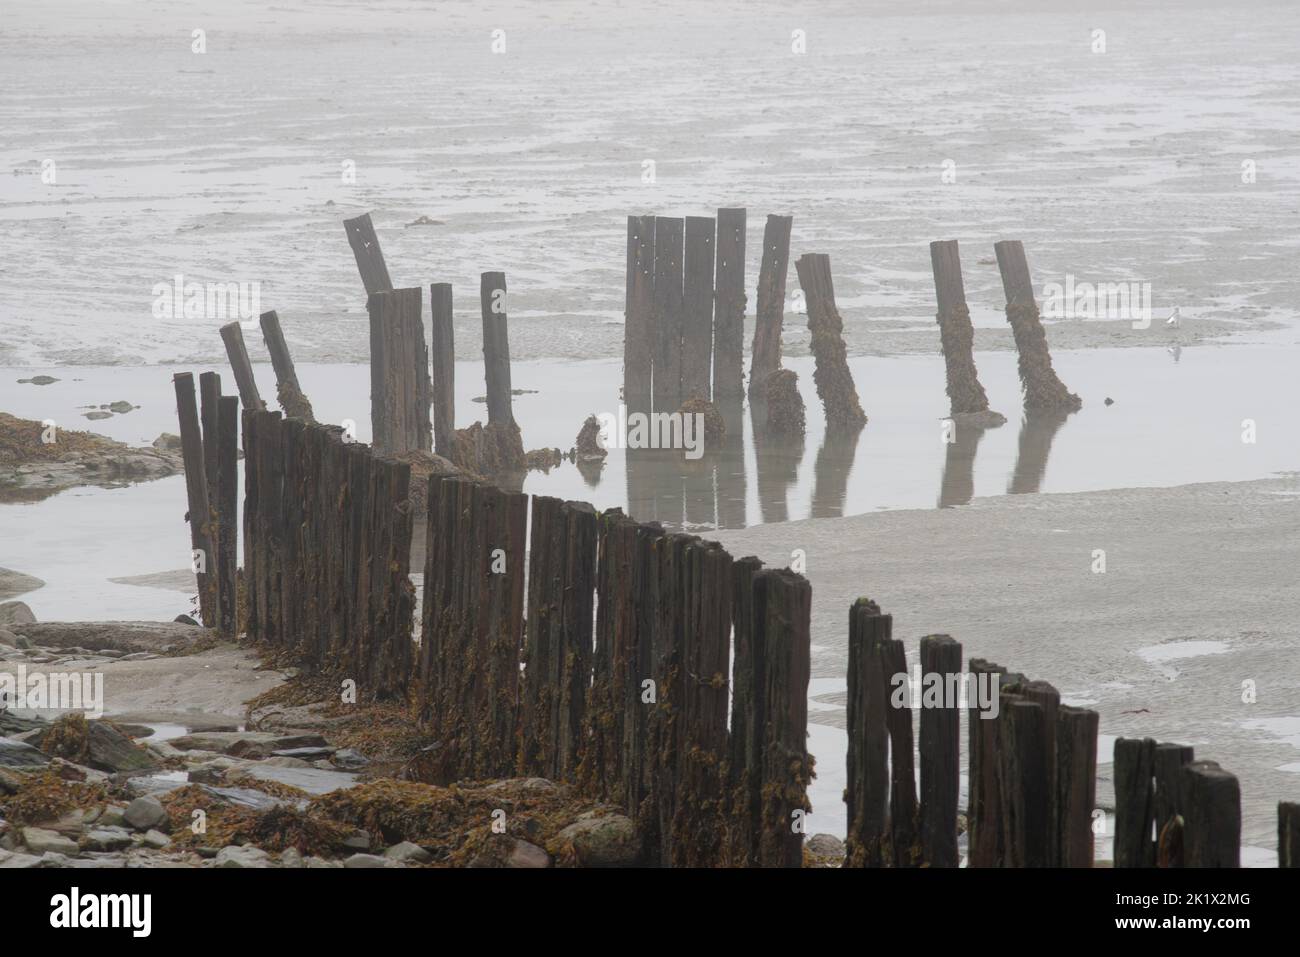 Un paysage marin brumeux avec les restes d'une gélifiant rouillée ou d'une jetée de plage. La marée est dehors révélant la rive de sable. Banque D'Images